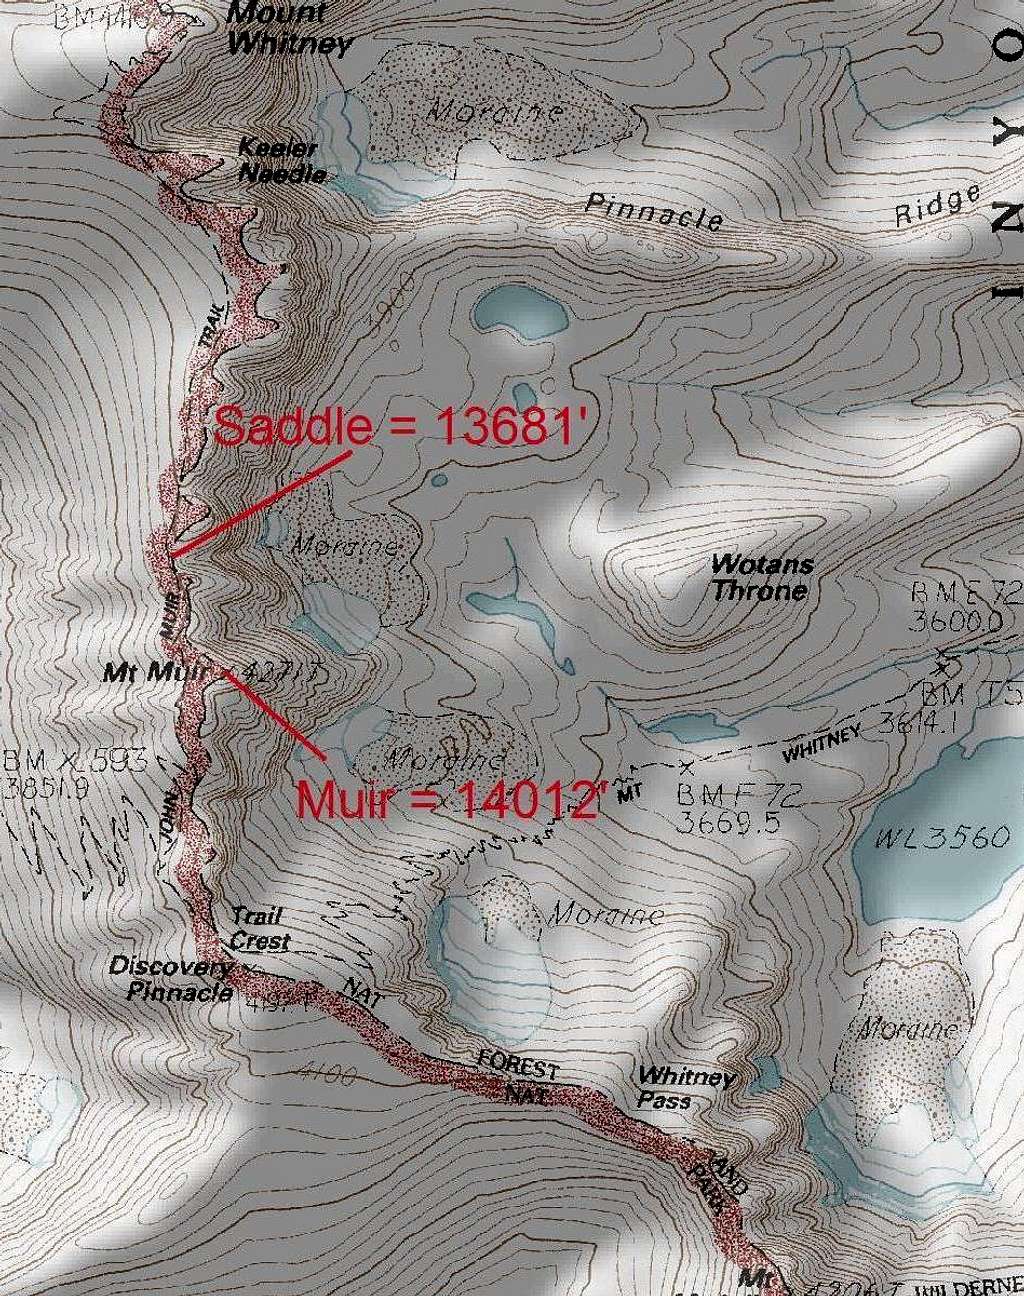 Mount Muir is Ranked